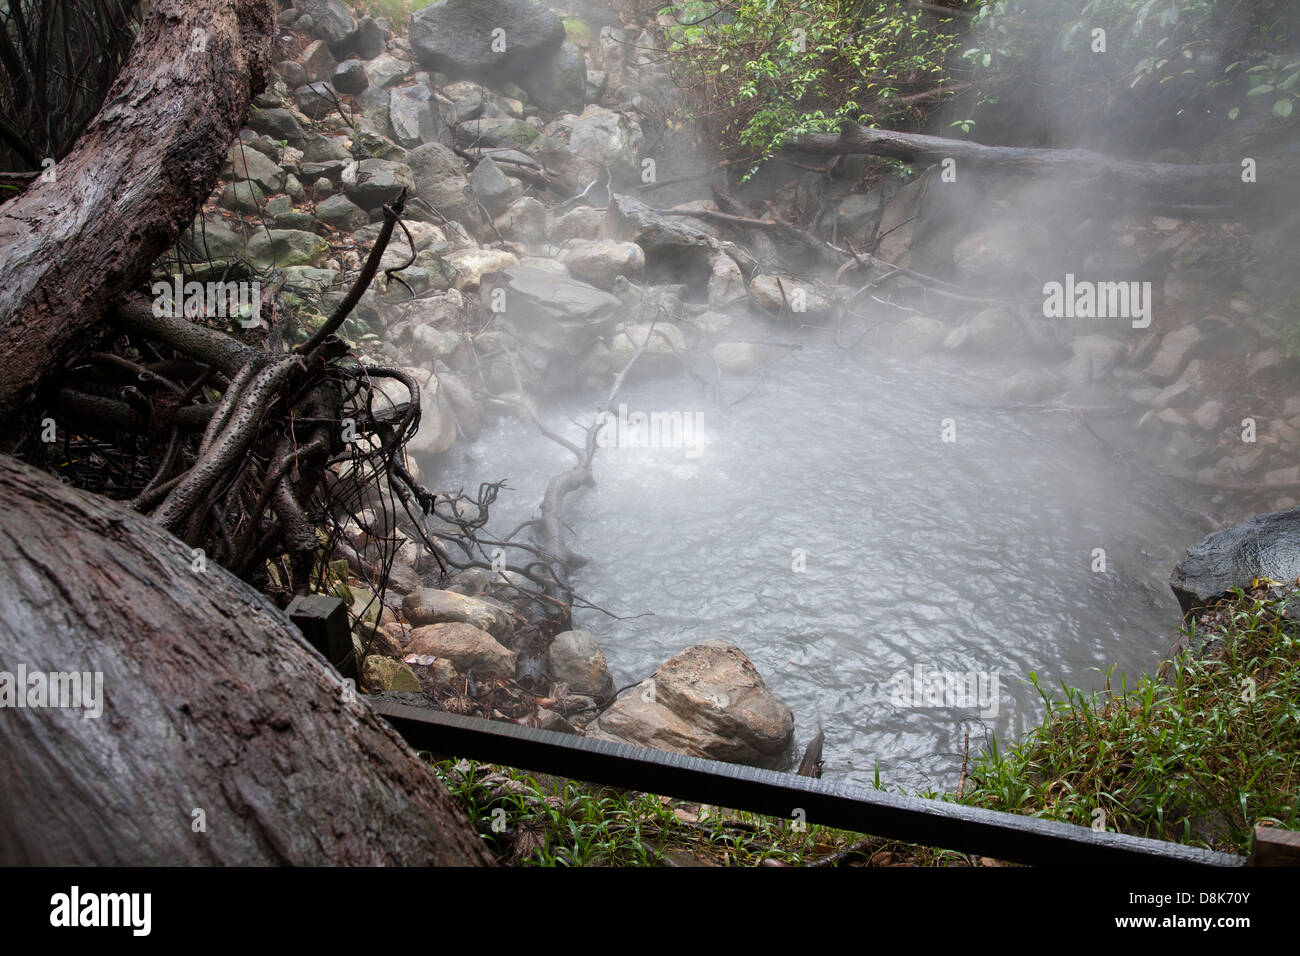 Fumaroles, boiling water and steam, Rincon de la Vieja National Park, Costa Rica Stock Photo